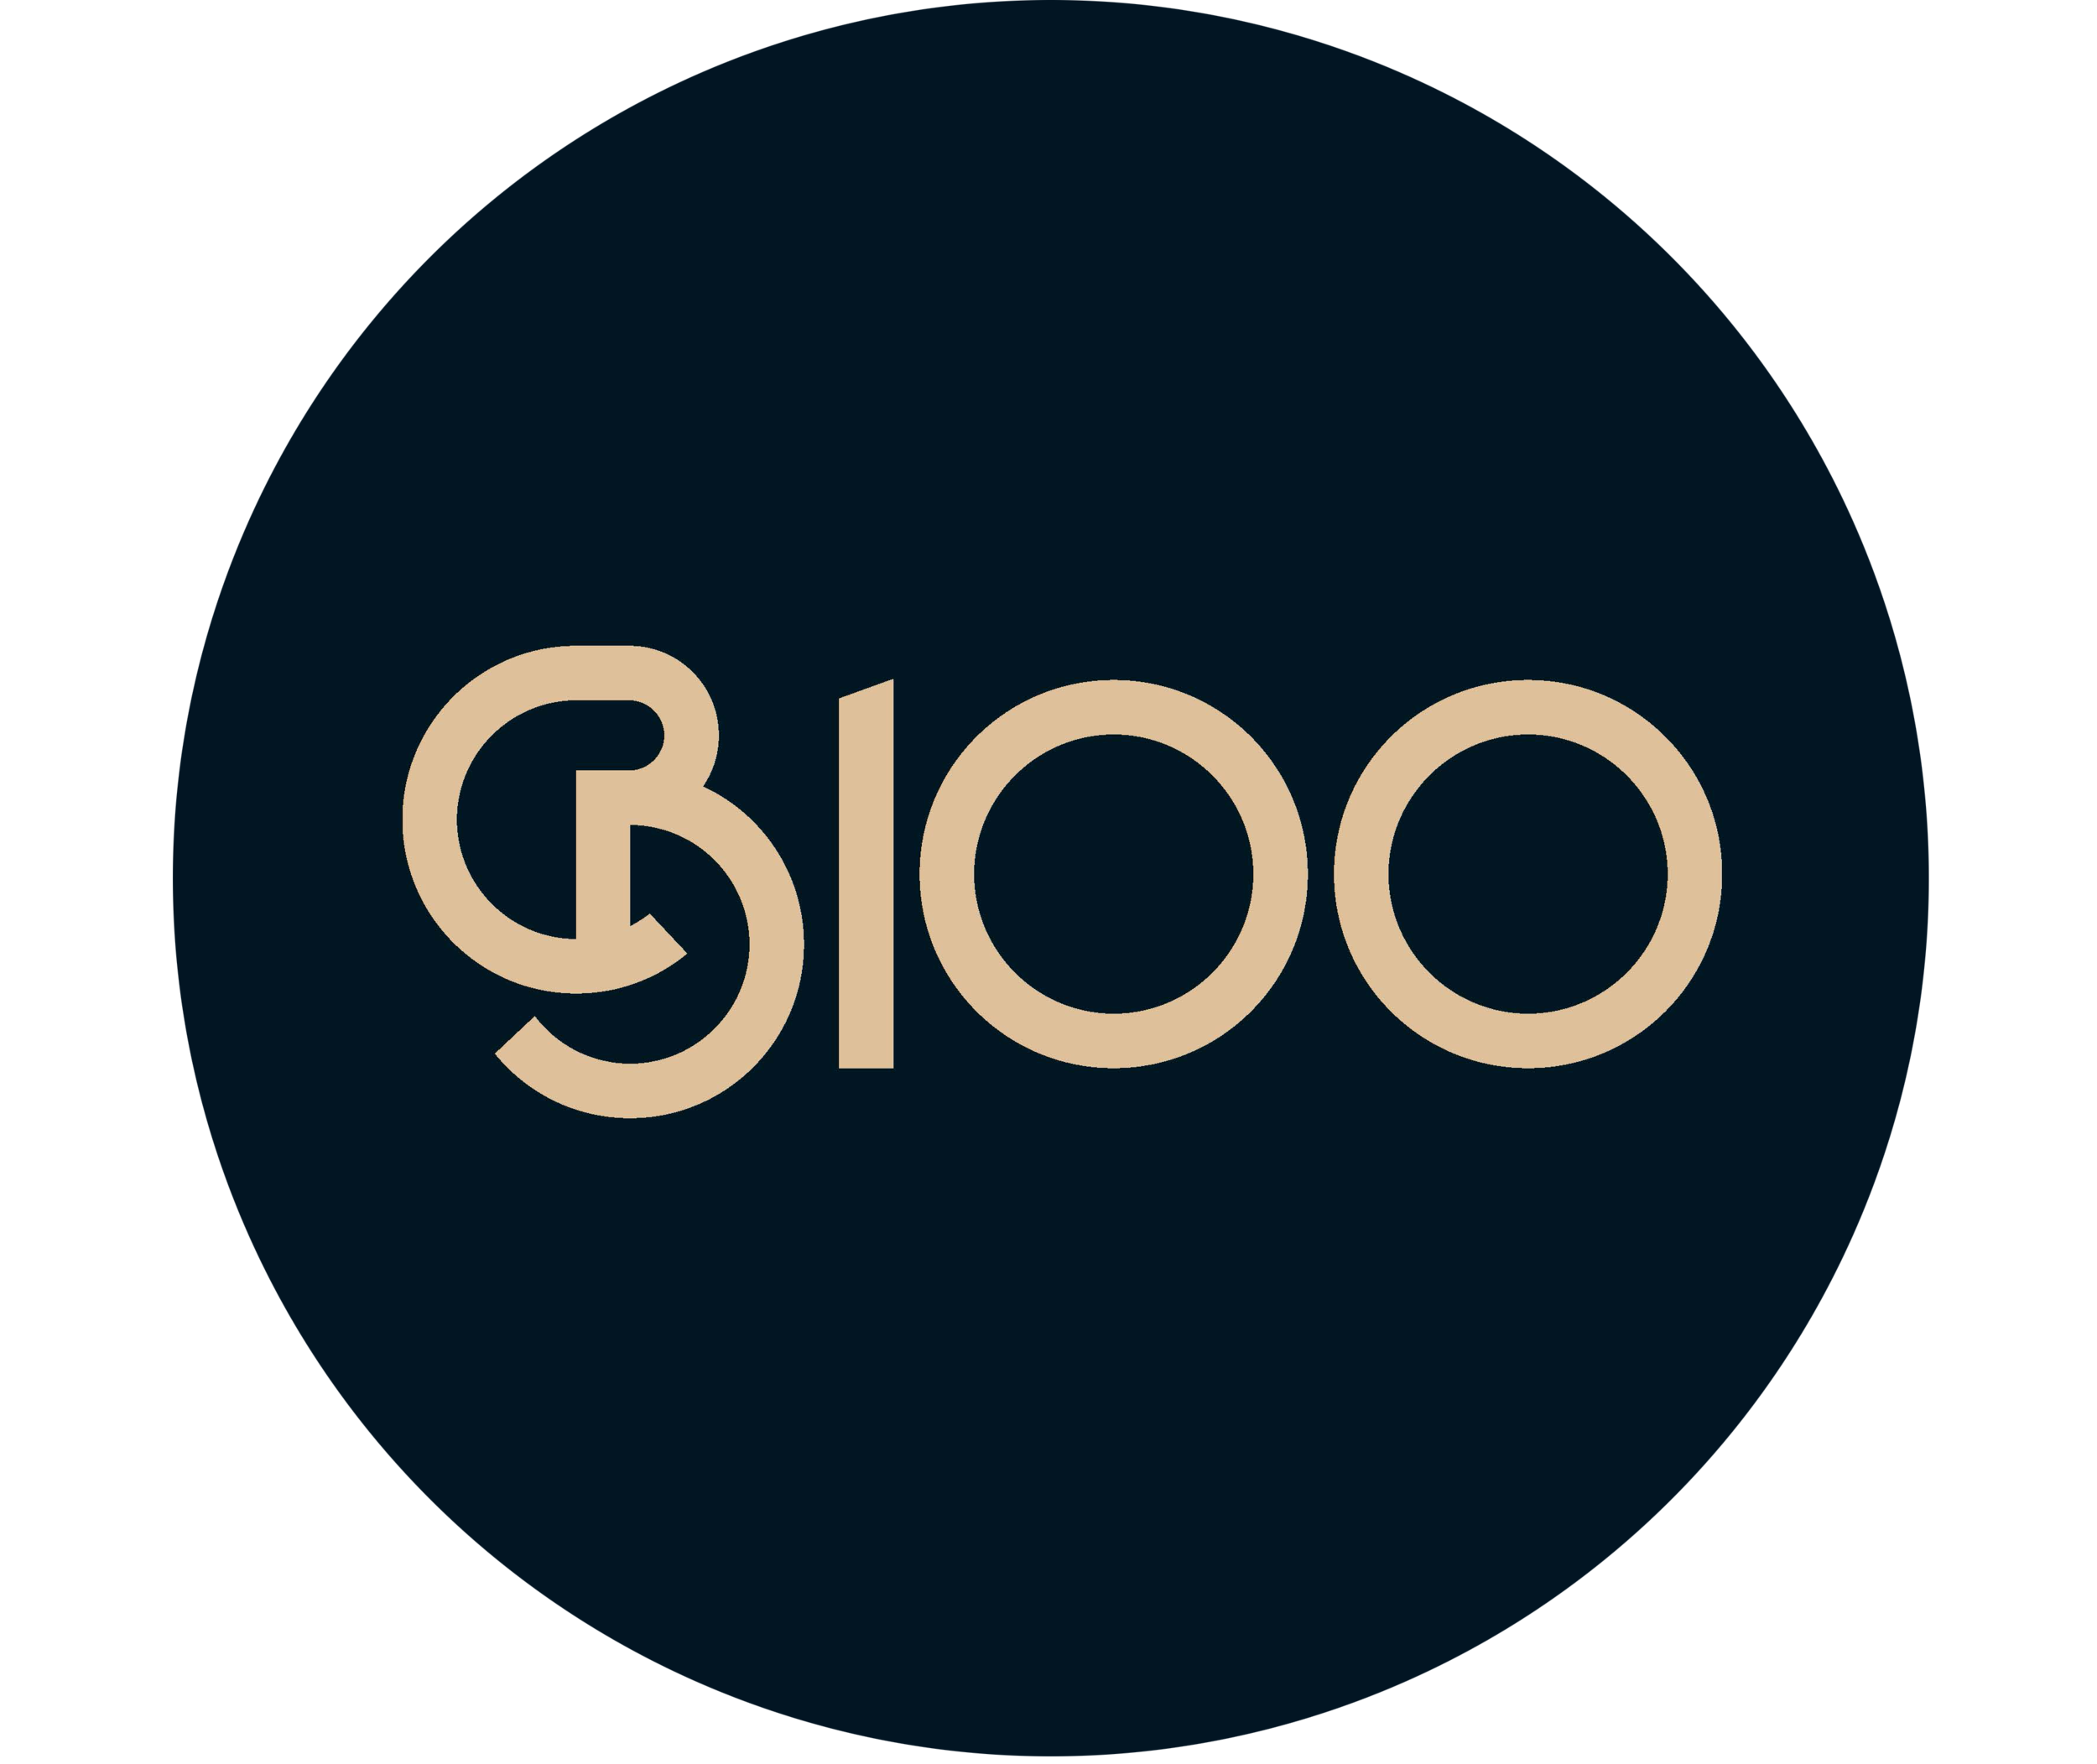 B100 logo circular.png